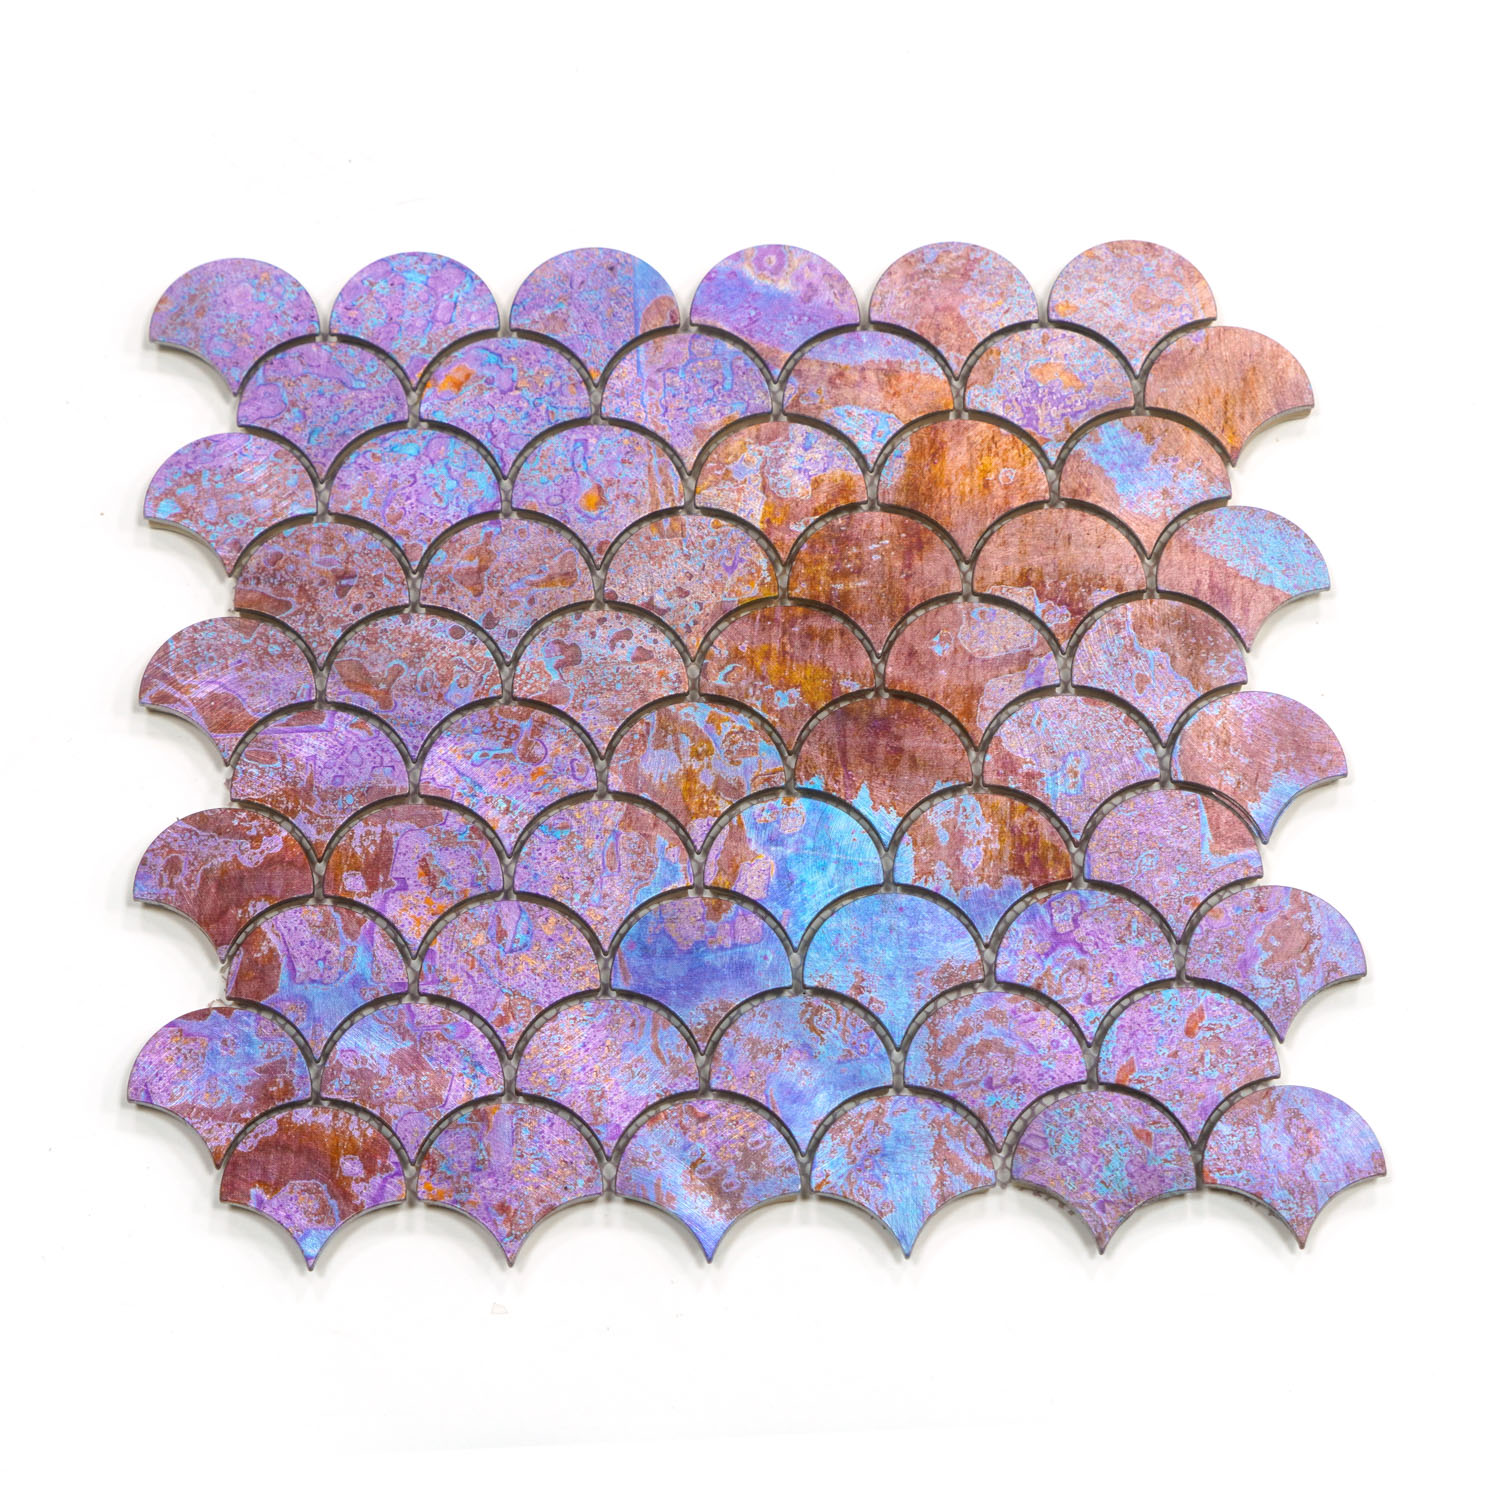 fan Shaped Mosaic Tiles